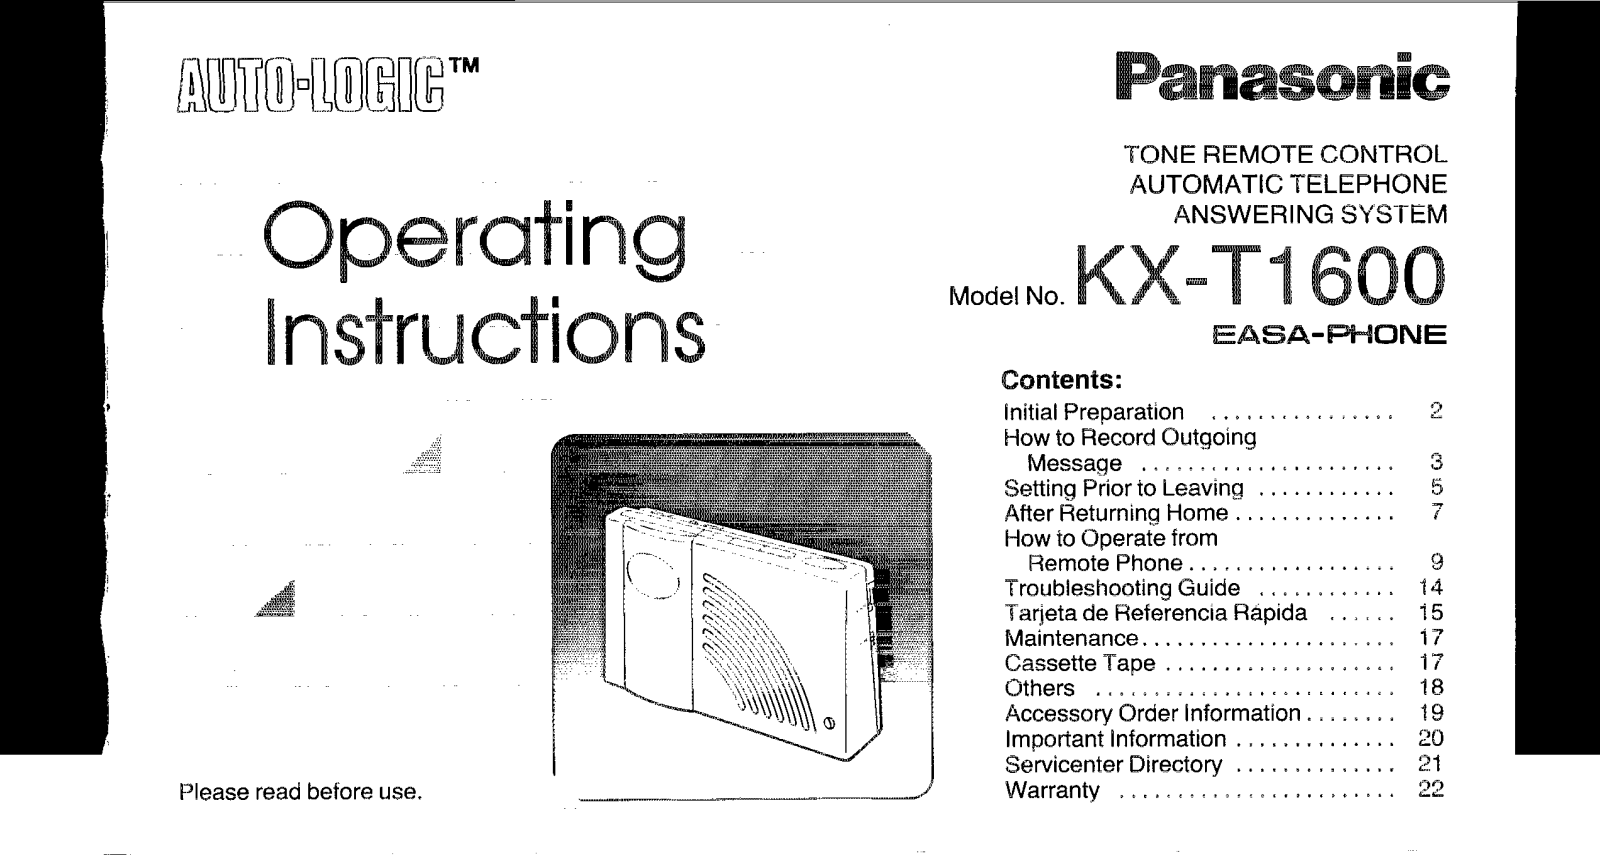 Panasonic kx-t1600 Operation Manual